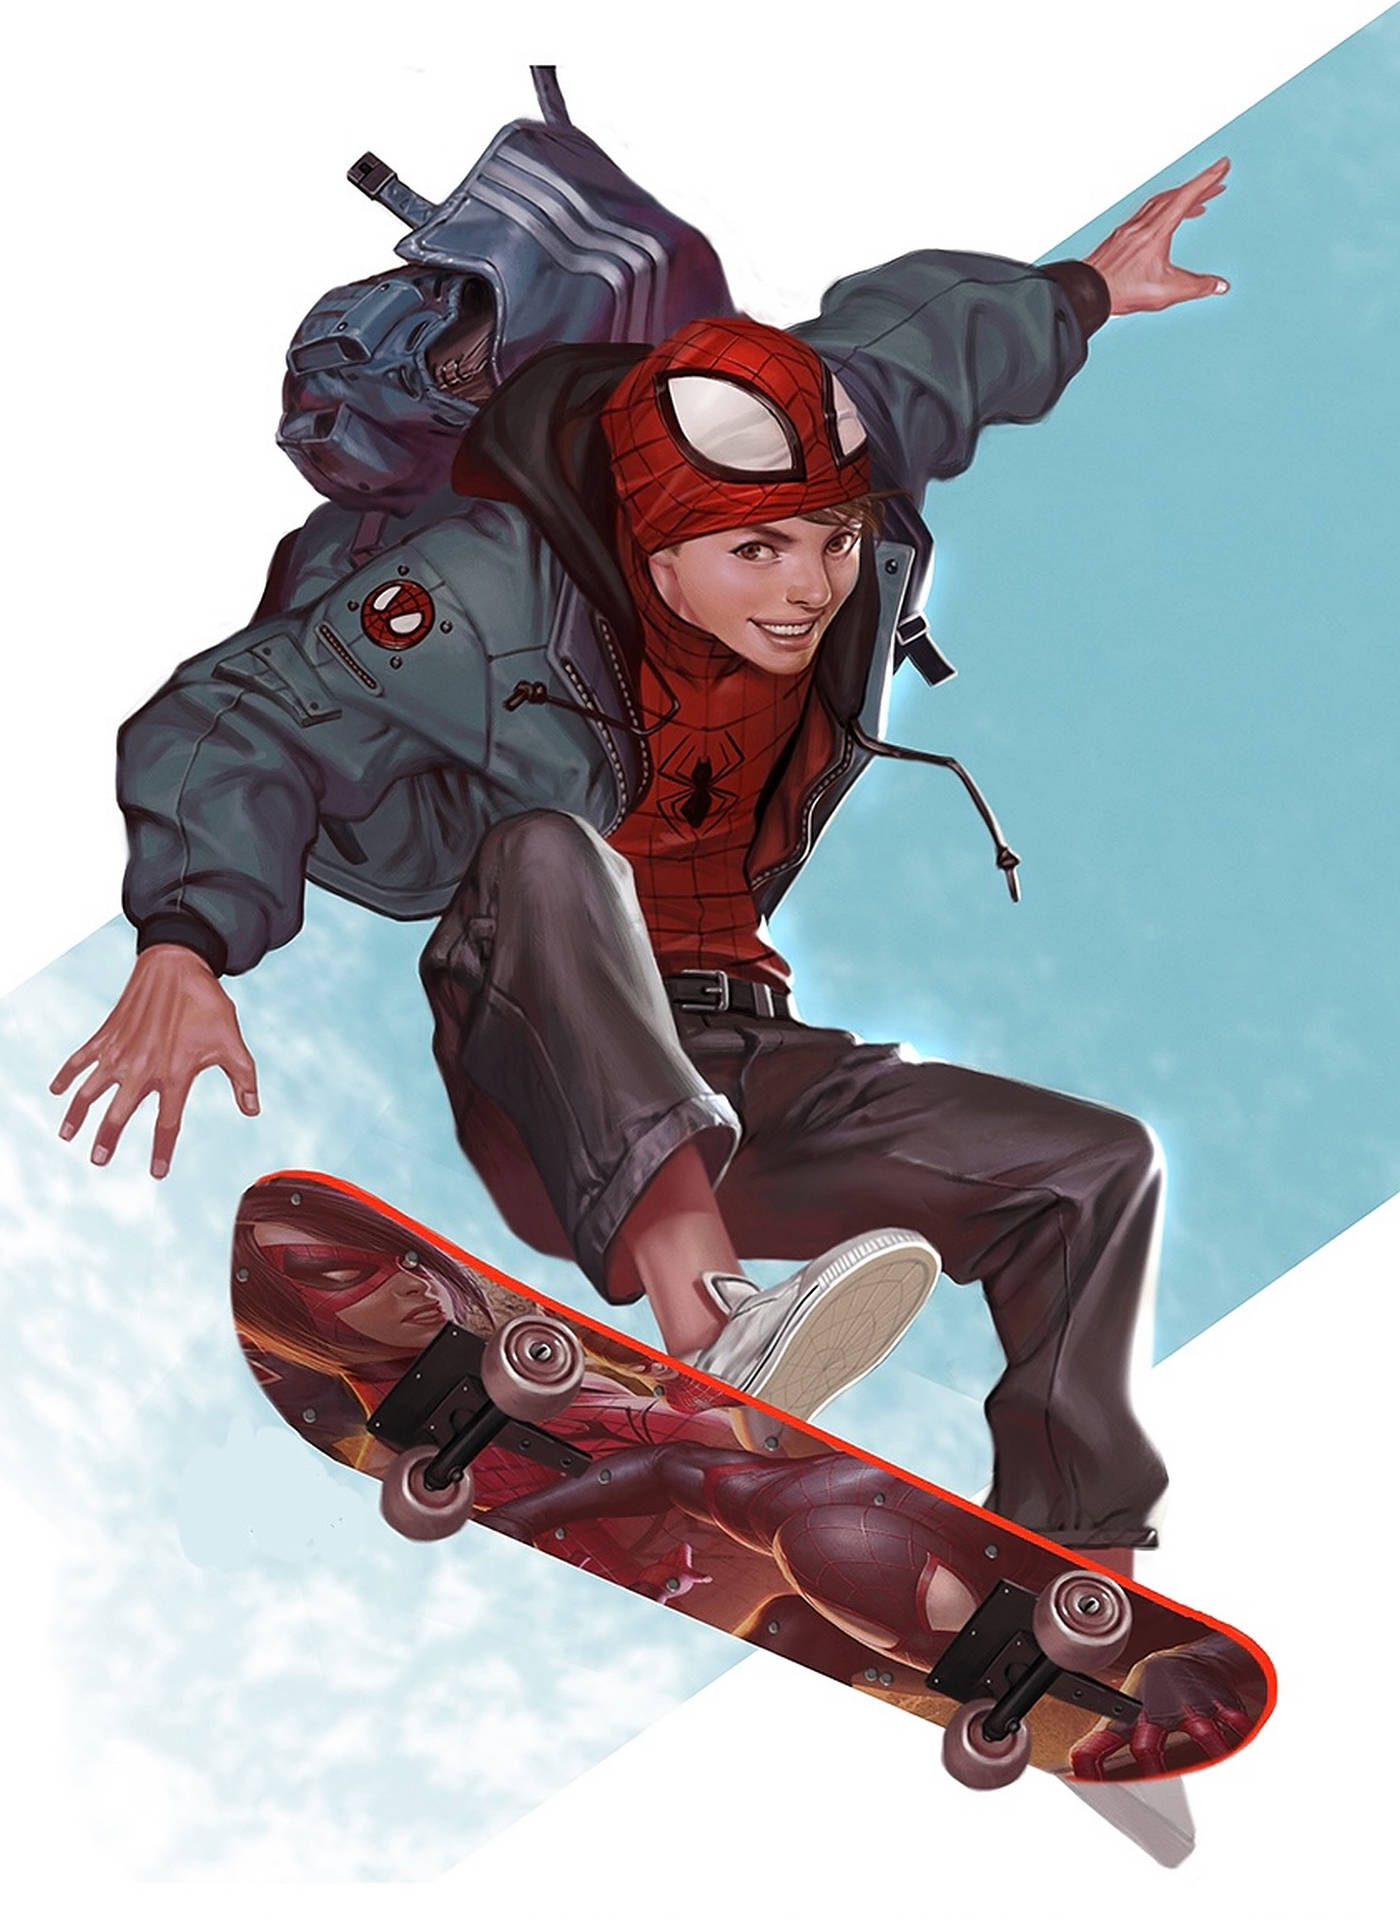 Aesthetic Superhero Skater Boy Wallpaper